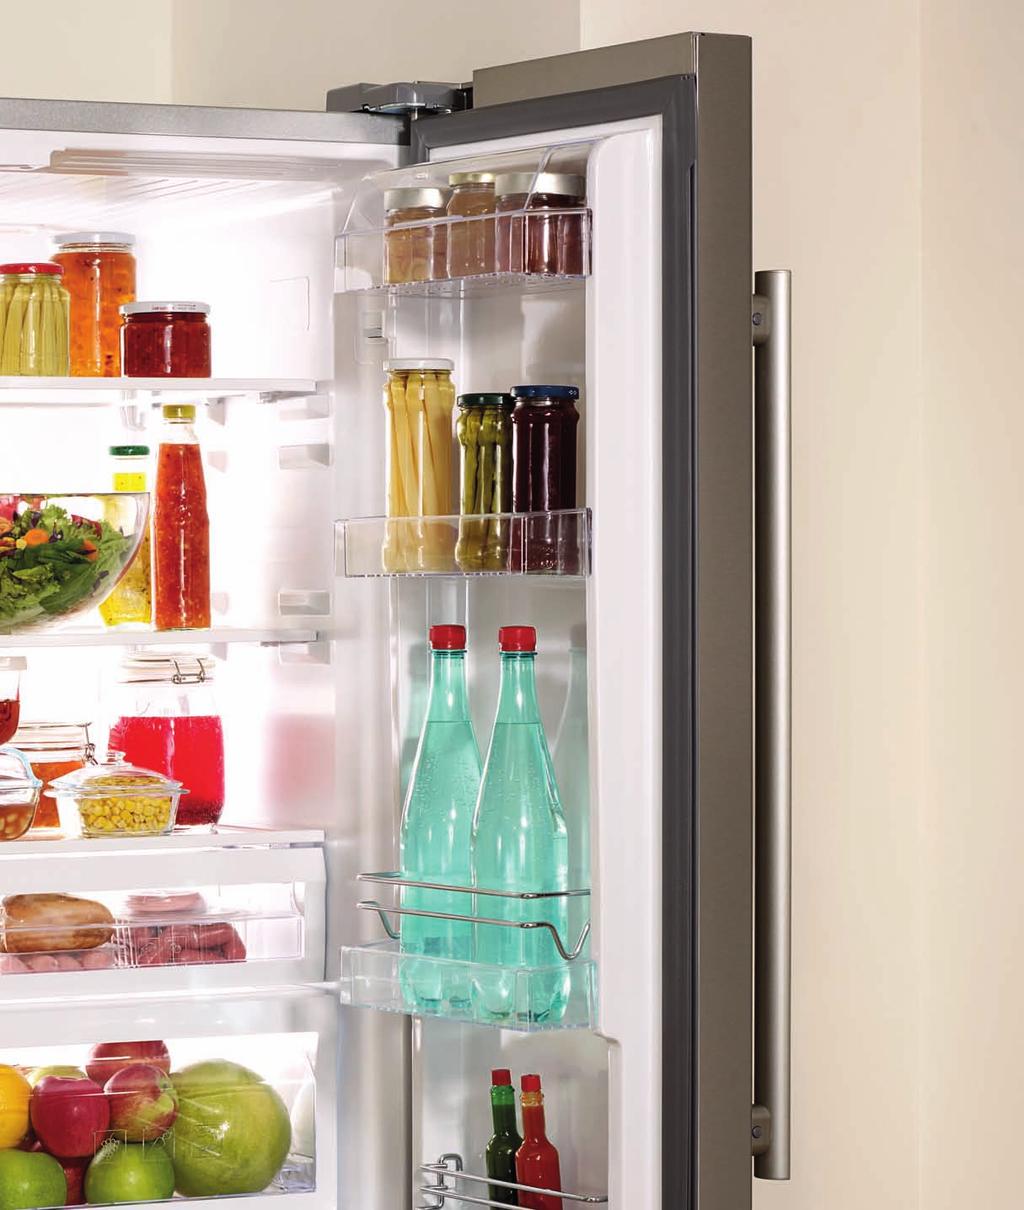 Ψυγεία Ψυγεία Από τα τελευταίας τεχνολογίας μεγάλης χωρητικότητας ψυγεία τύπου ντουλάπας έως ένα απλό ψυγείο, η σειρά ψυγείων Beko έχει αναπτυχθεί ώστε να συνδυάζει τον μοντέρνο σχεδιασμό με την πιο